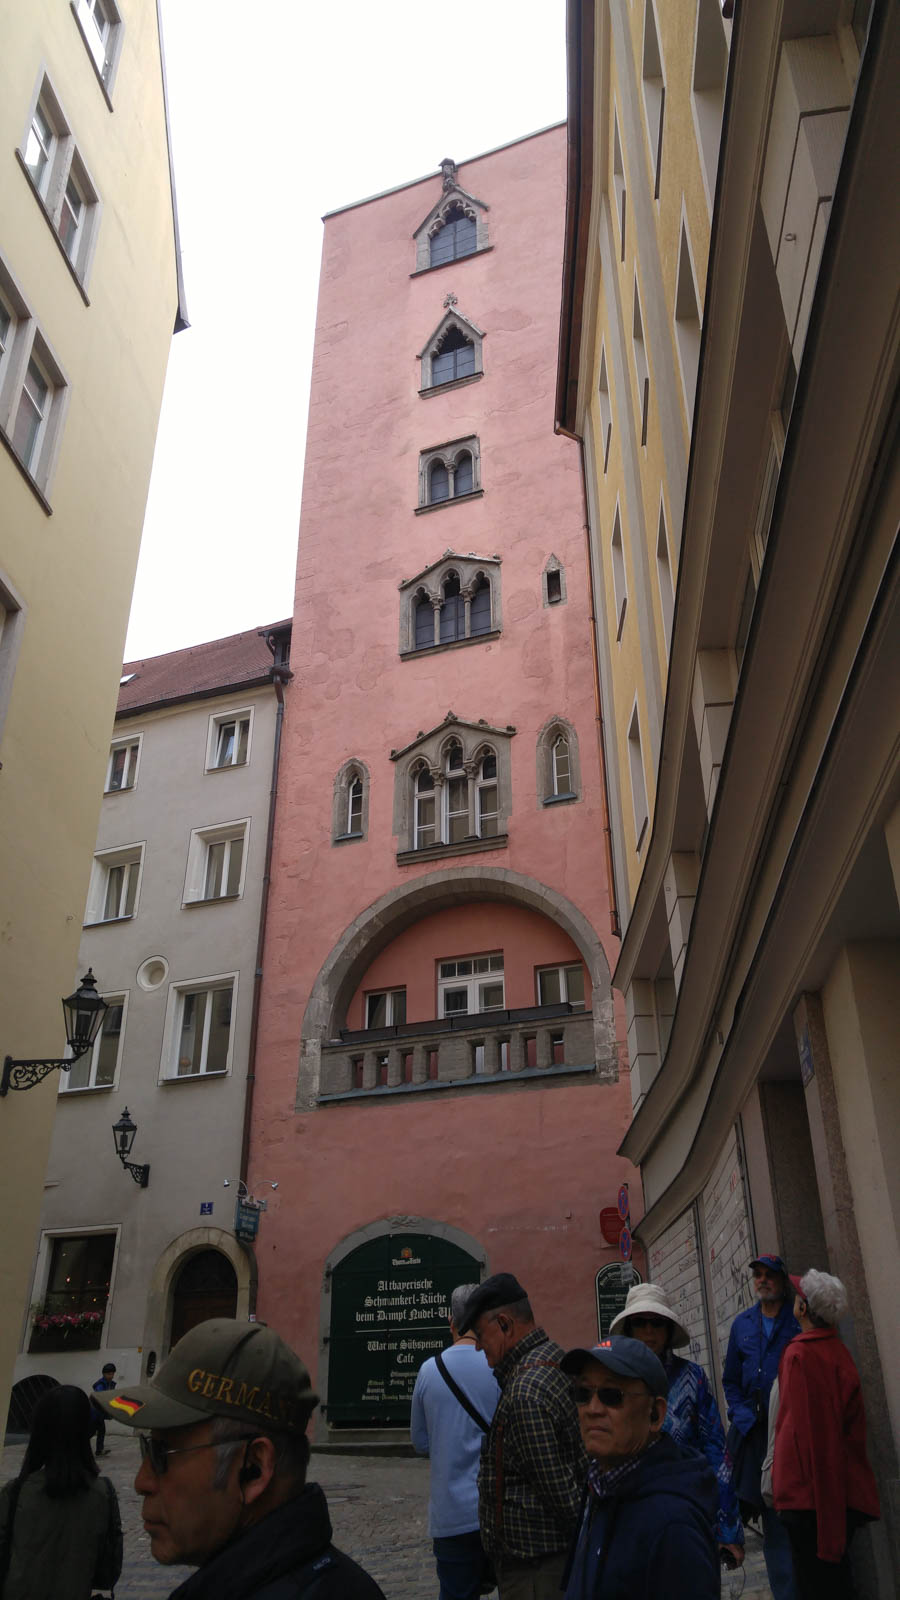 Visiting Regensburg Germany